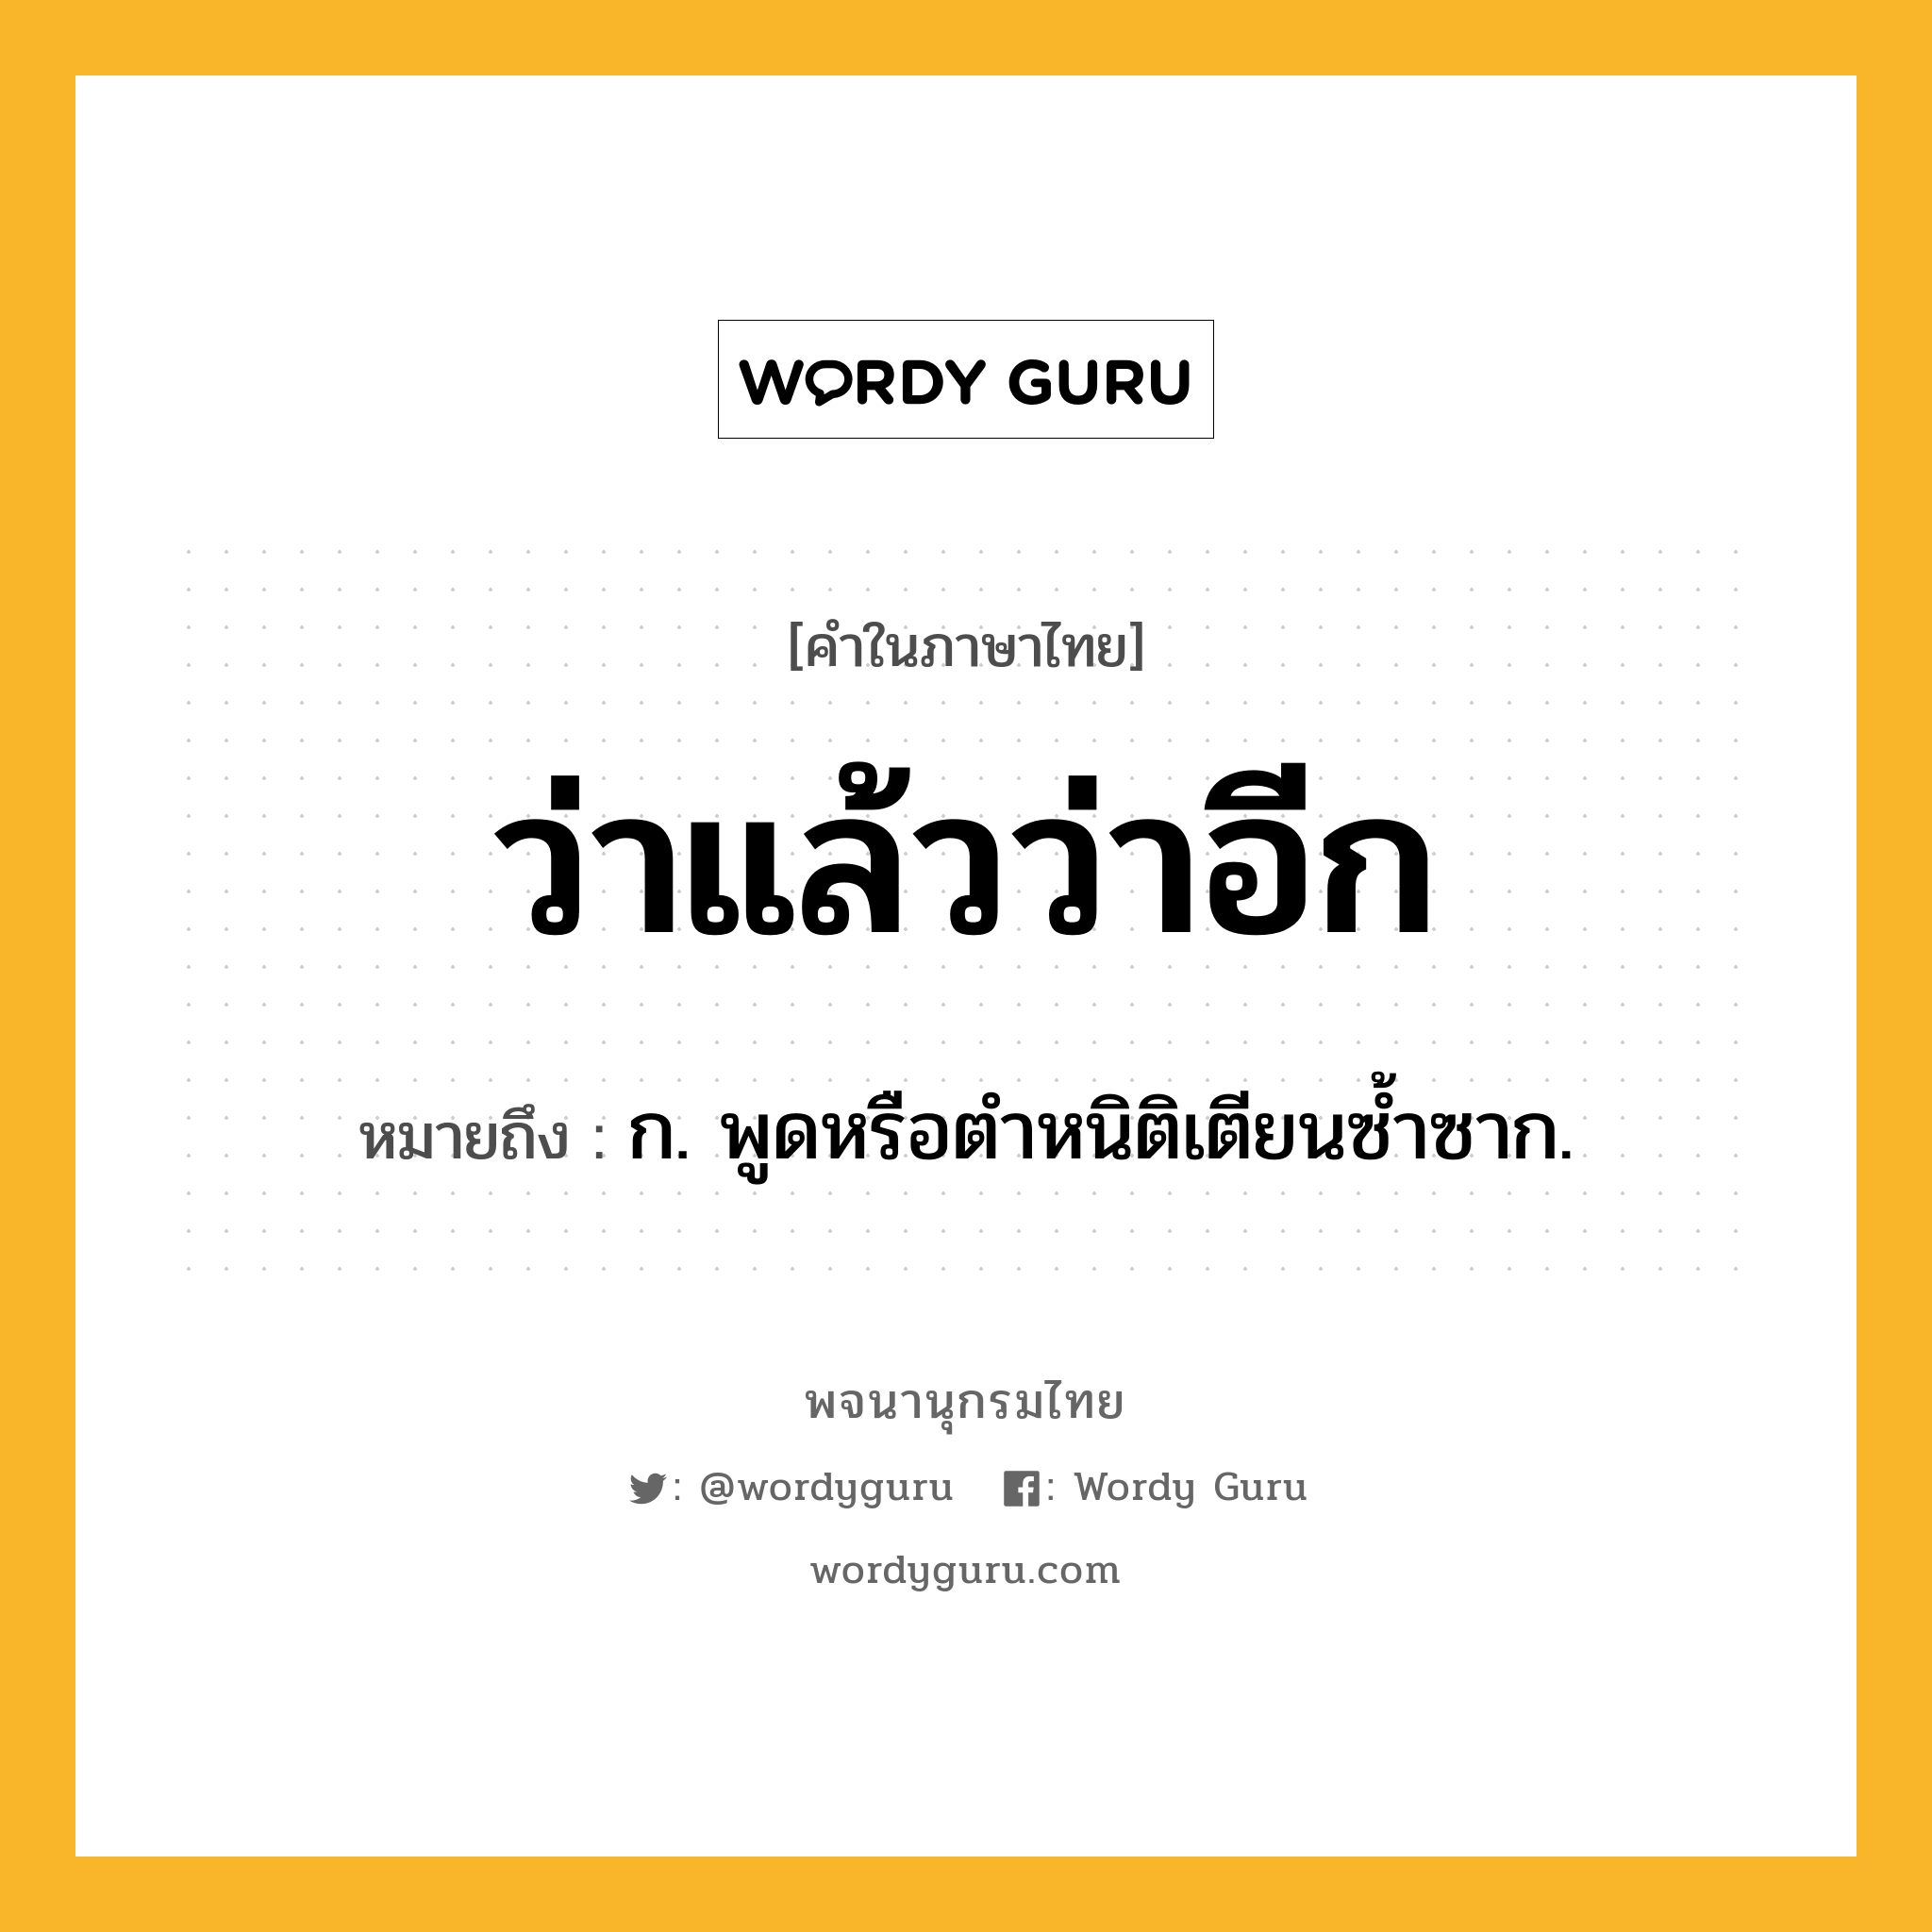 ว่าแล้วว่าอีก หมายถึงอะไร?, คำในภาษาไทย ว่าแล้วว่าอีก หมายถึง ก. พูดหรือตำหนิติเตียนซ้ำซาก.